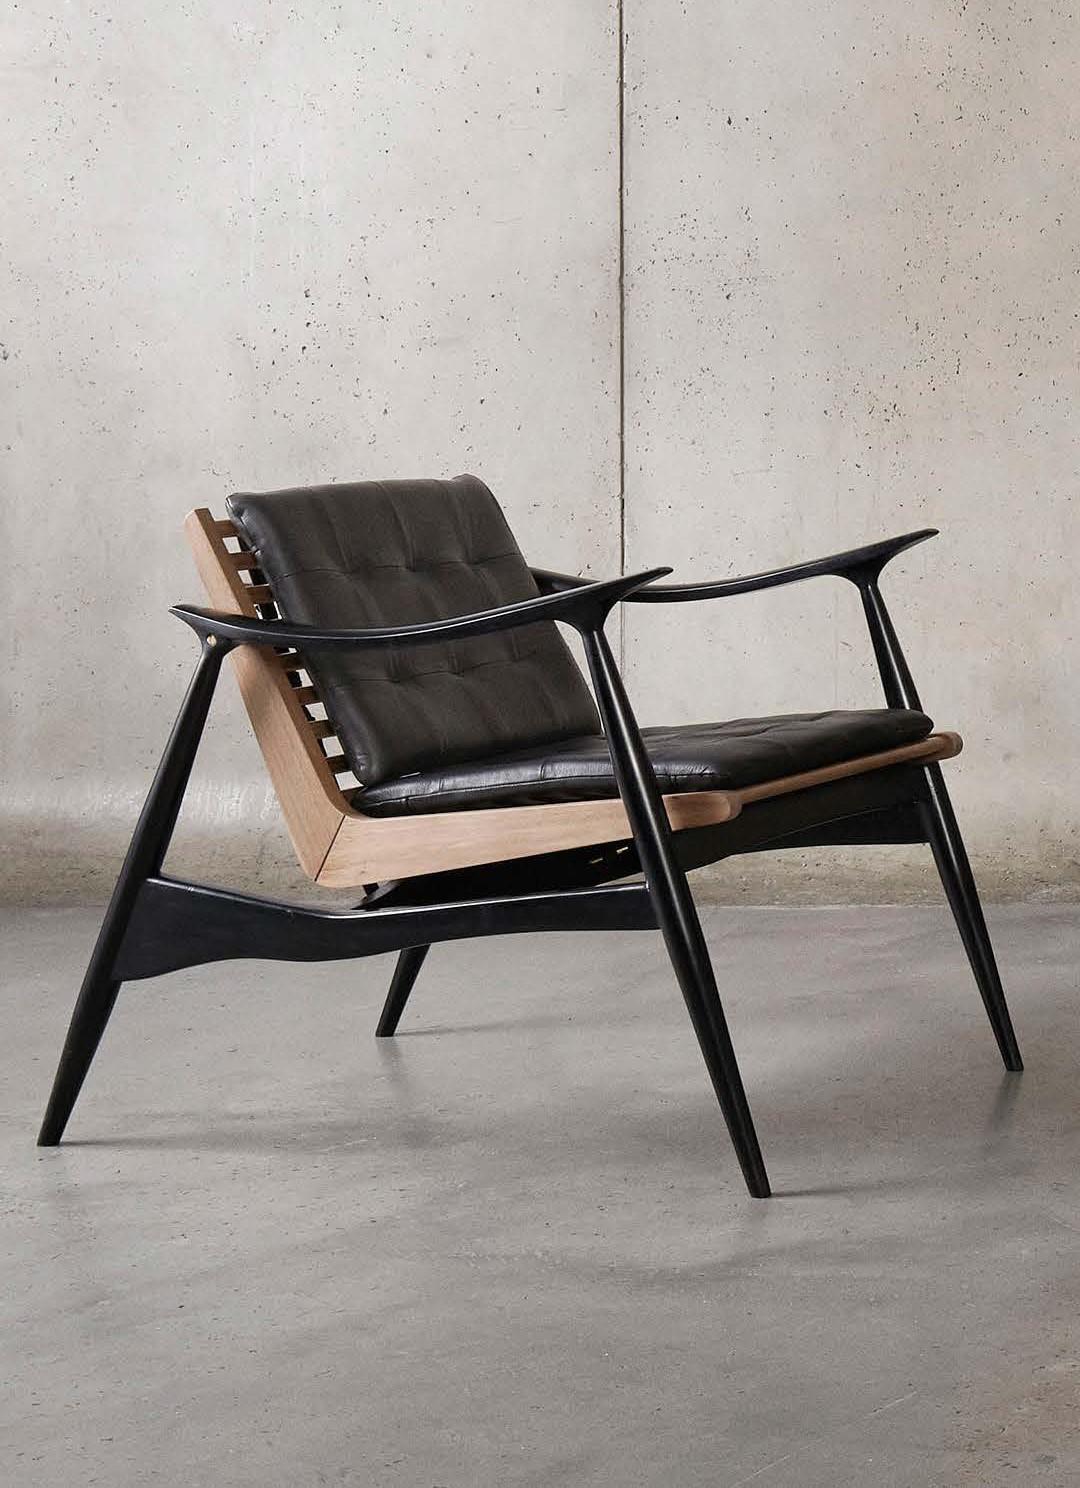 Atra lounge chair von Atra Design
Abmessungen: T 92 x B 66 x H 73 cm
MATERIALIEN: Leder, Mahagoni, Nussbaum
Erhältlich in anderen Farben.

Atra Design
Wir sind Atra, eine Möbelmarke, die von Atra form A, einer in Mexiko-Stadt ansässigen